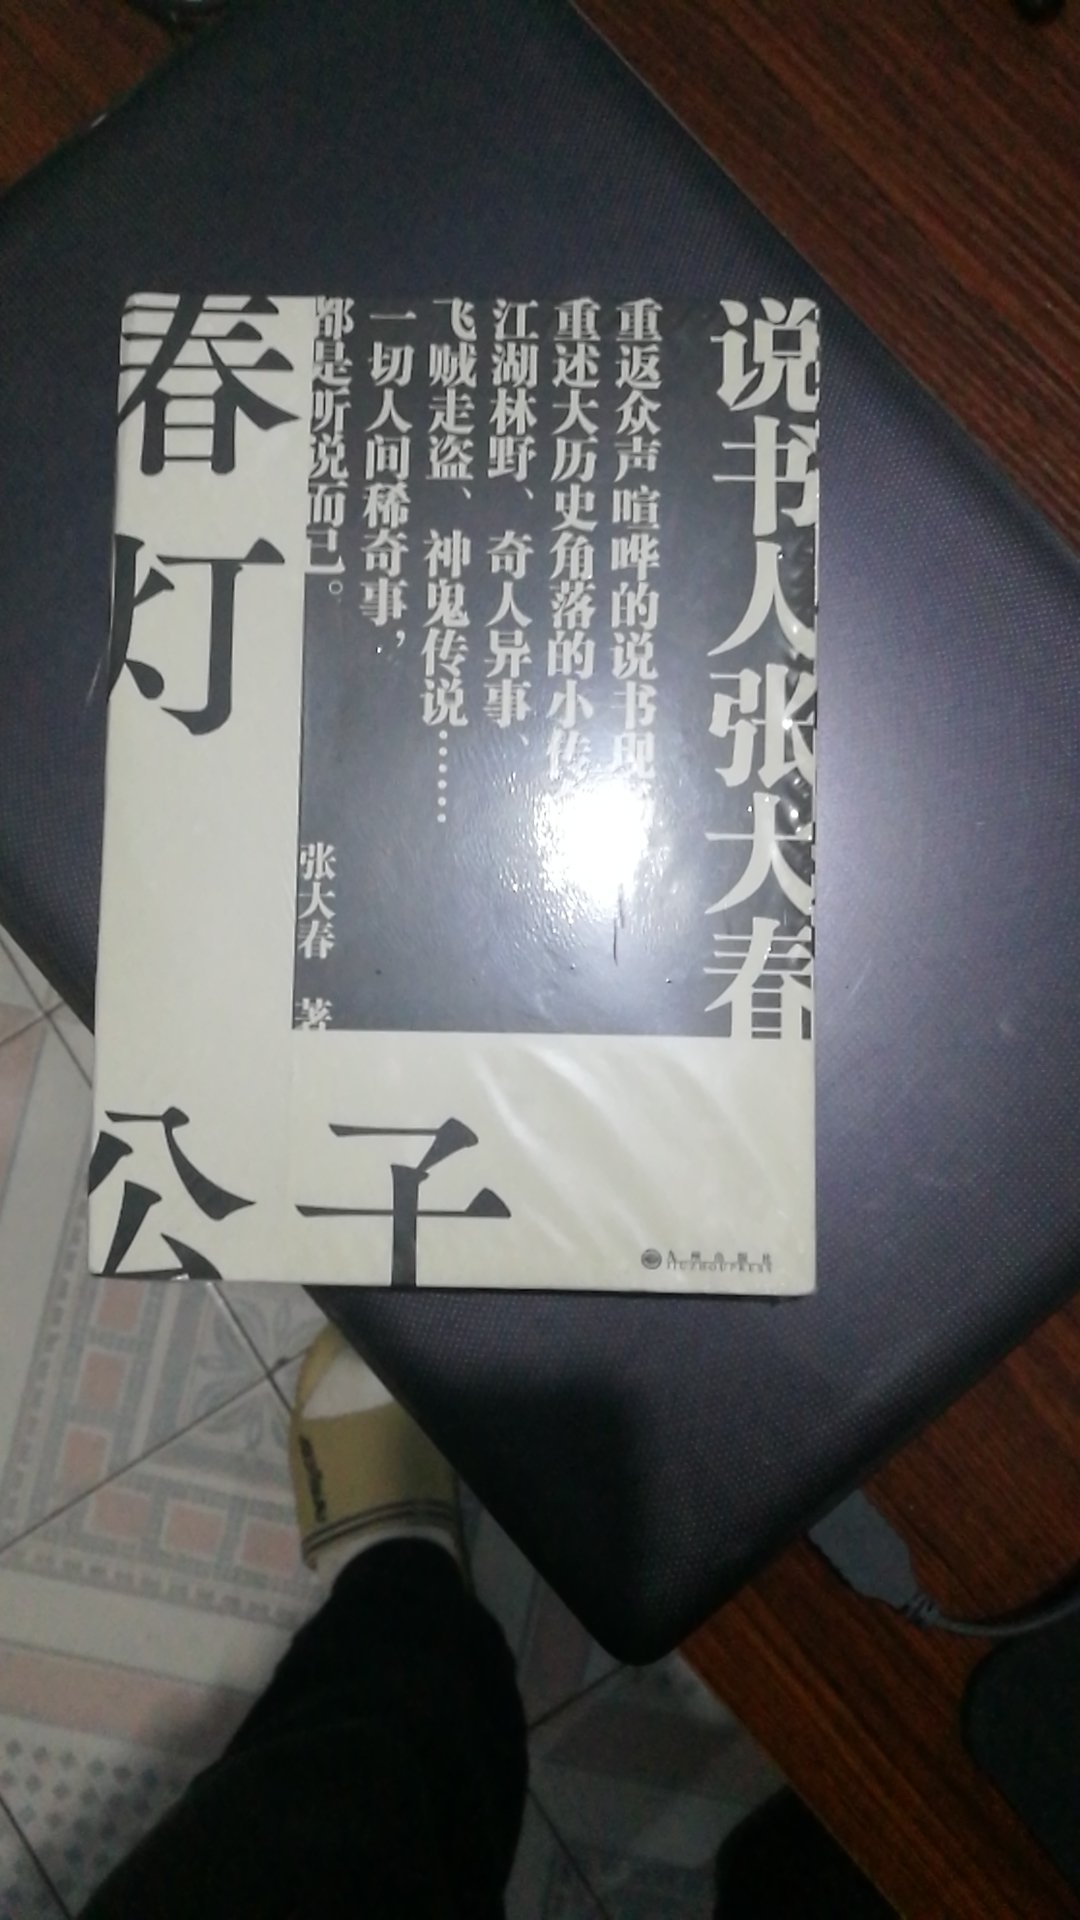 张大春是我认为在世的华语作家中最棒的了